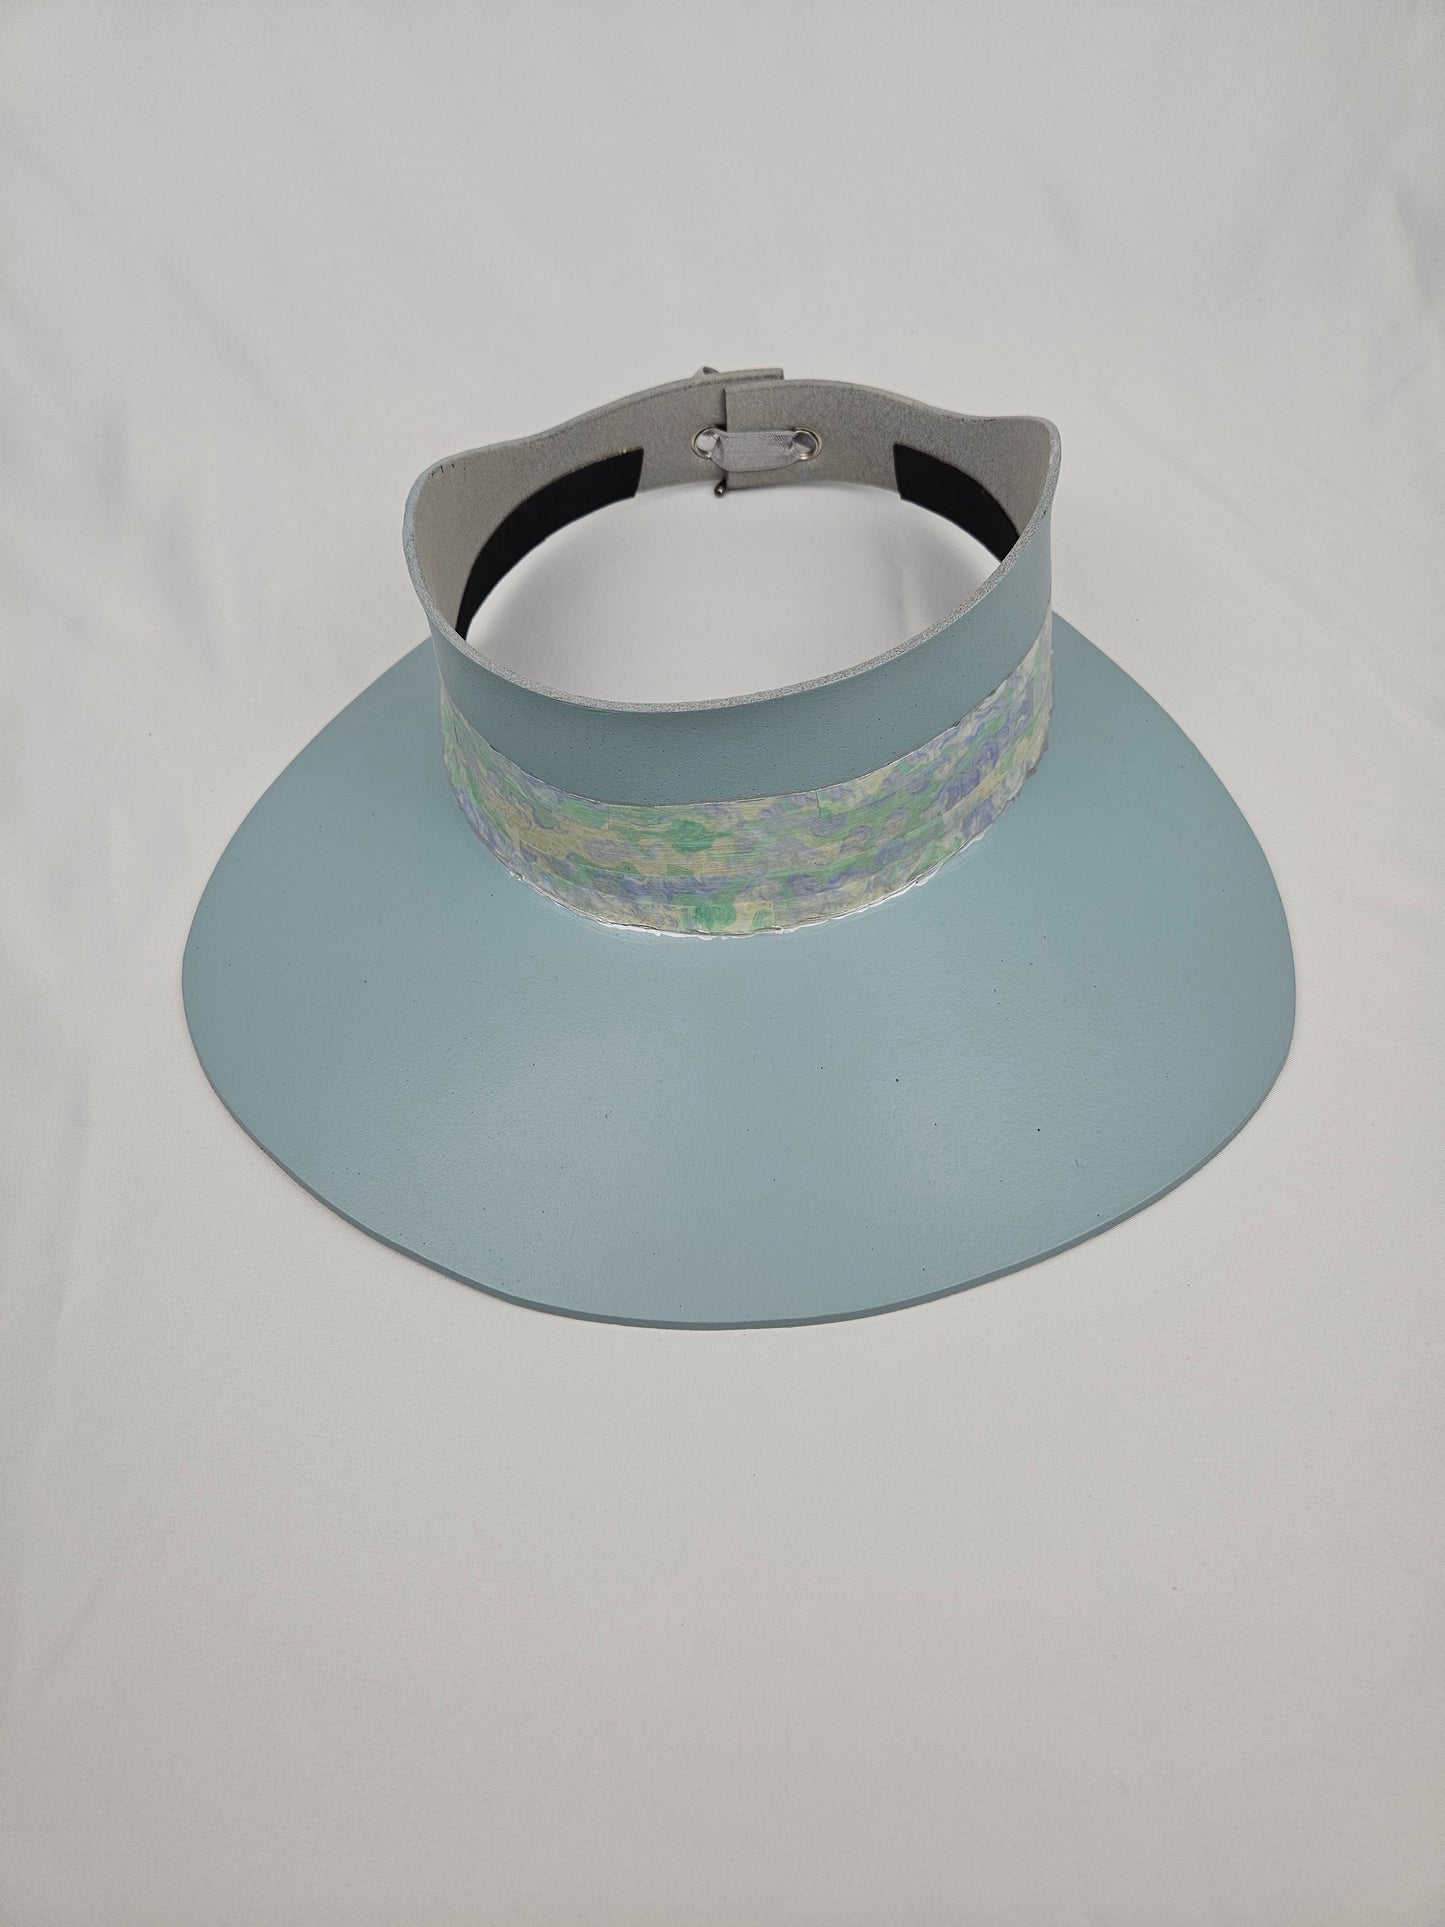 Tall Soft Blue Audrey Foam Sun Visor Hat with Pastel Green Light Blue Band: 1950s, Walks, Brunch, Asian, Golf, Easter, Church, No Headache, Derby